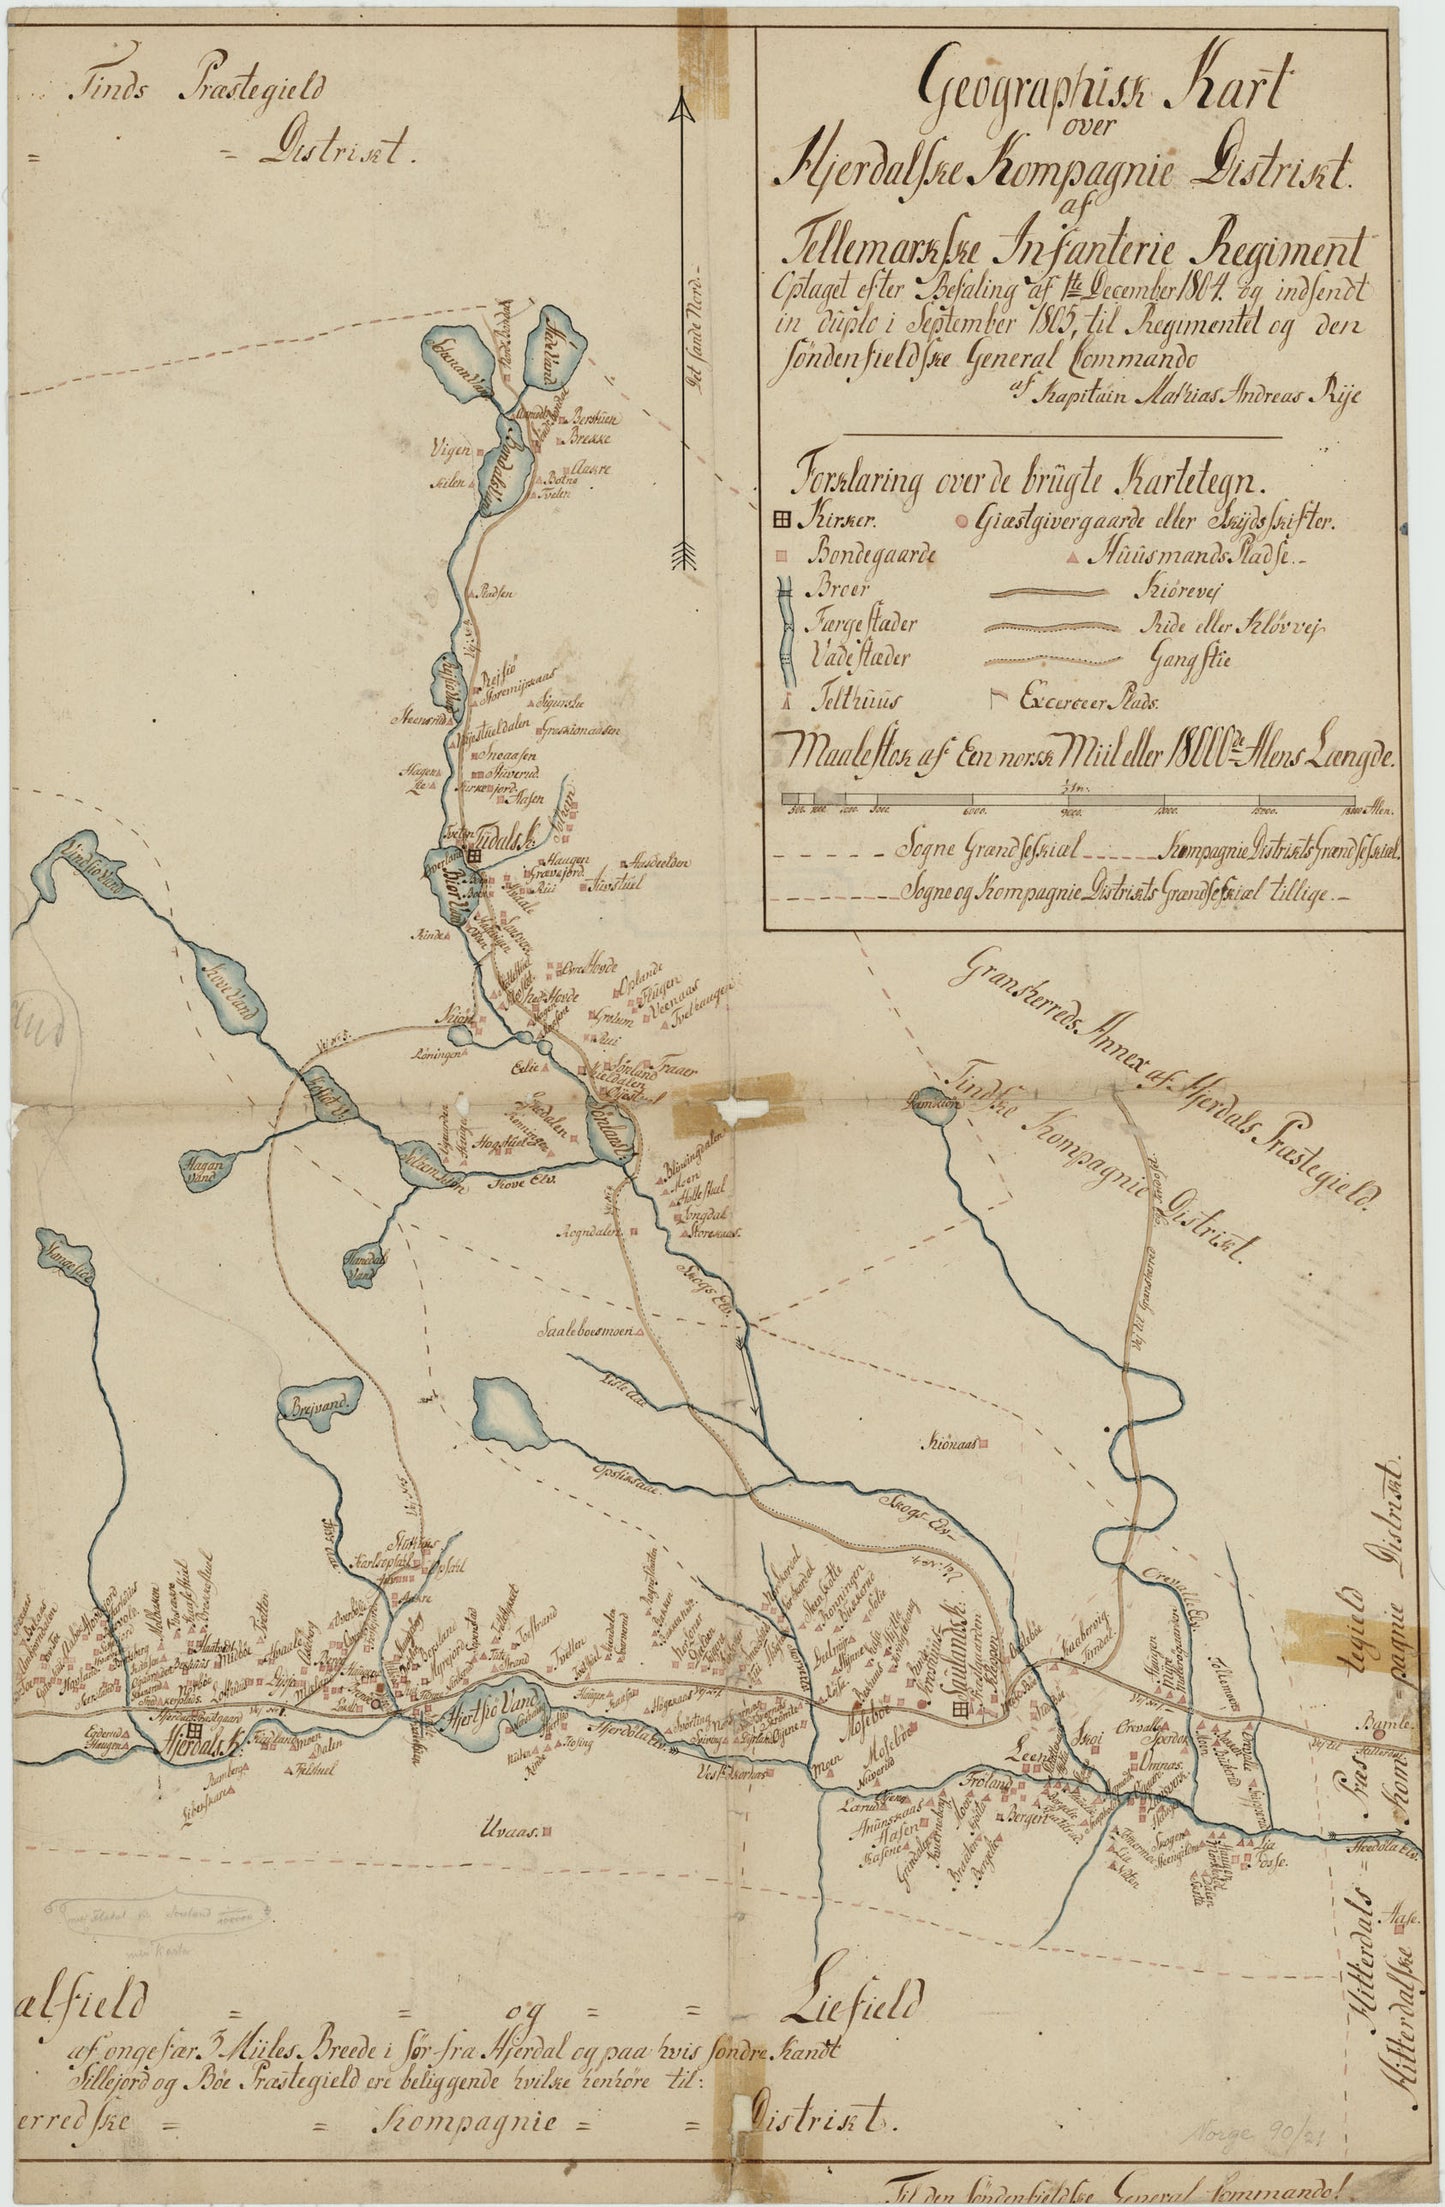 Kartblad 21 øst-2: Geographisk Kart over det Hjerdalske Compagnie District; østre del versjon 1: Telemark